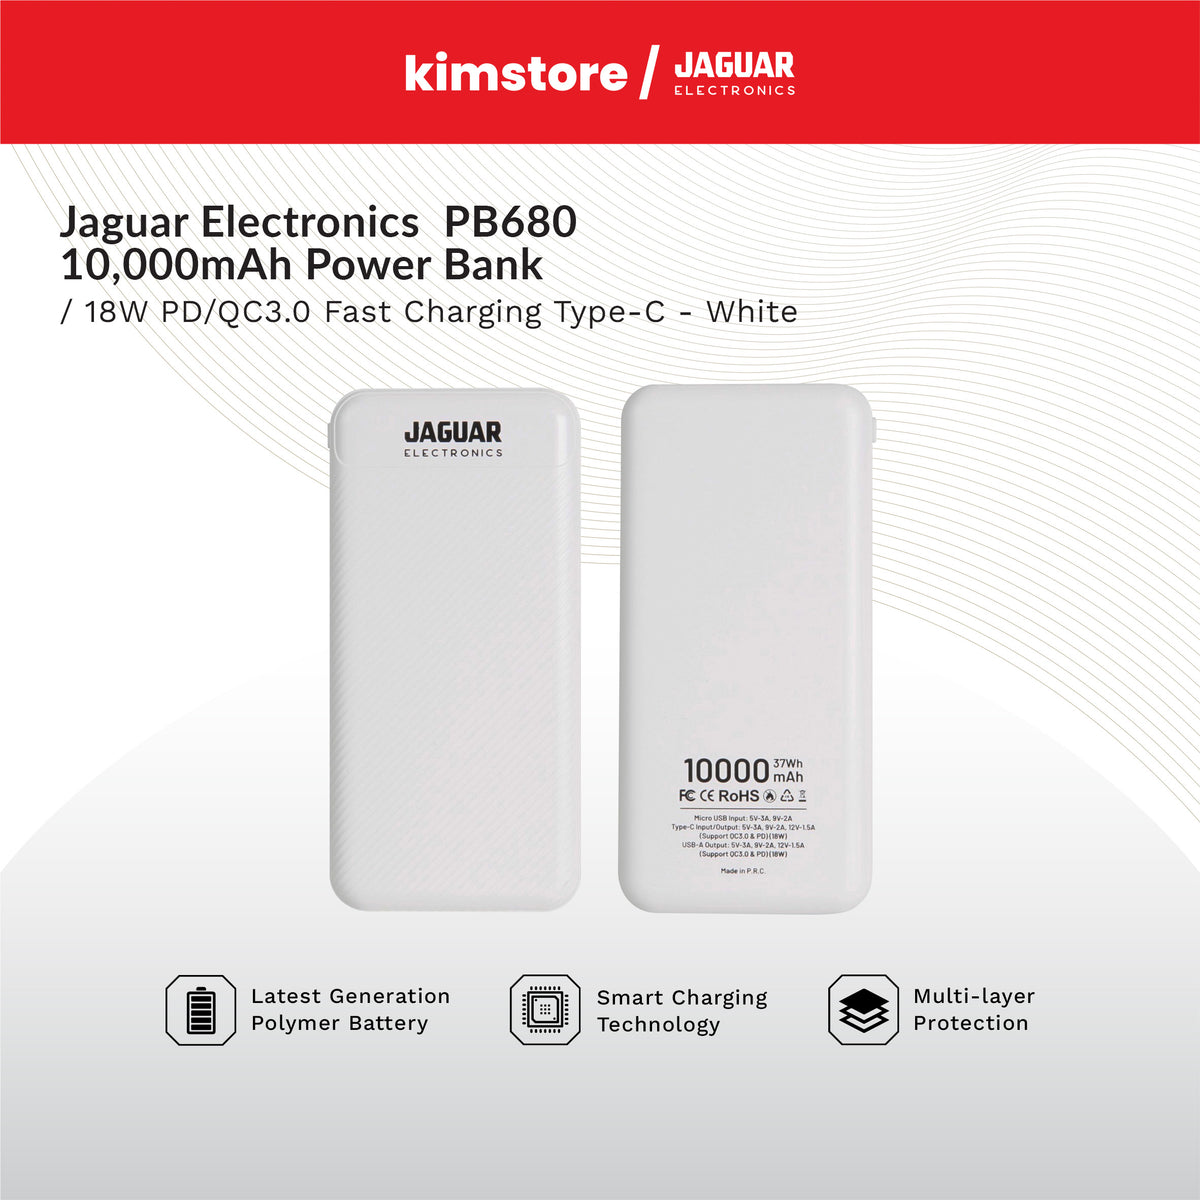 Jaguar Electronics PB680 10000mAh Power Bank 18W PD/QC 3.0 Fast Charging Type-C